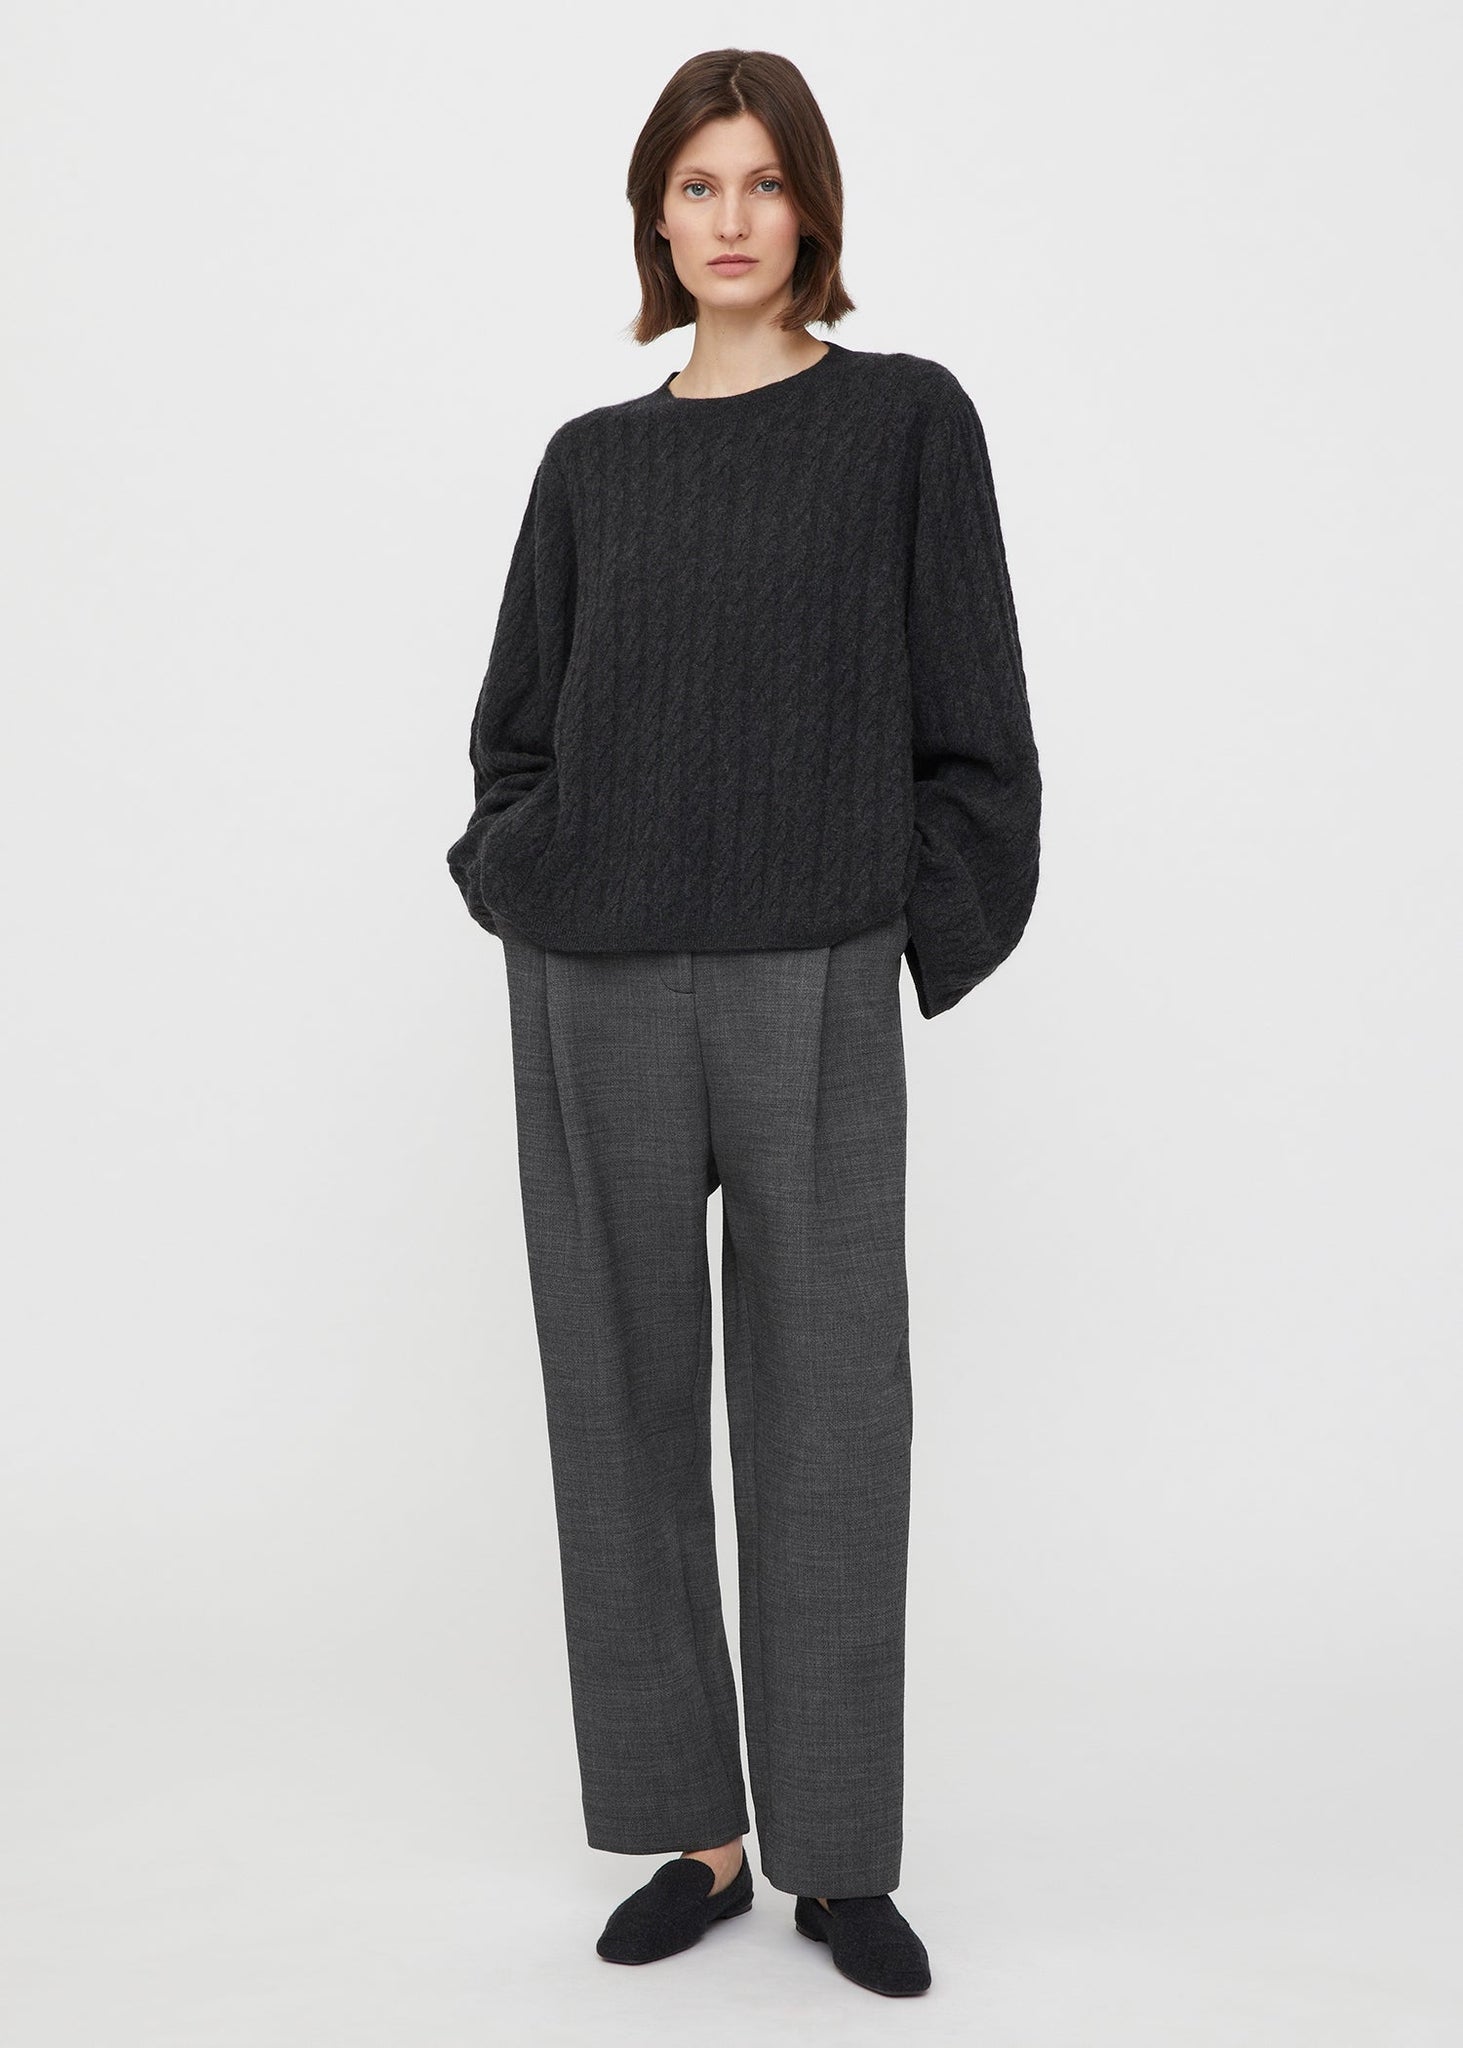 Cashmere cable knit dark grey mélange – Totême